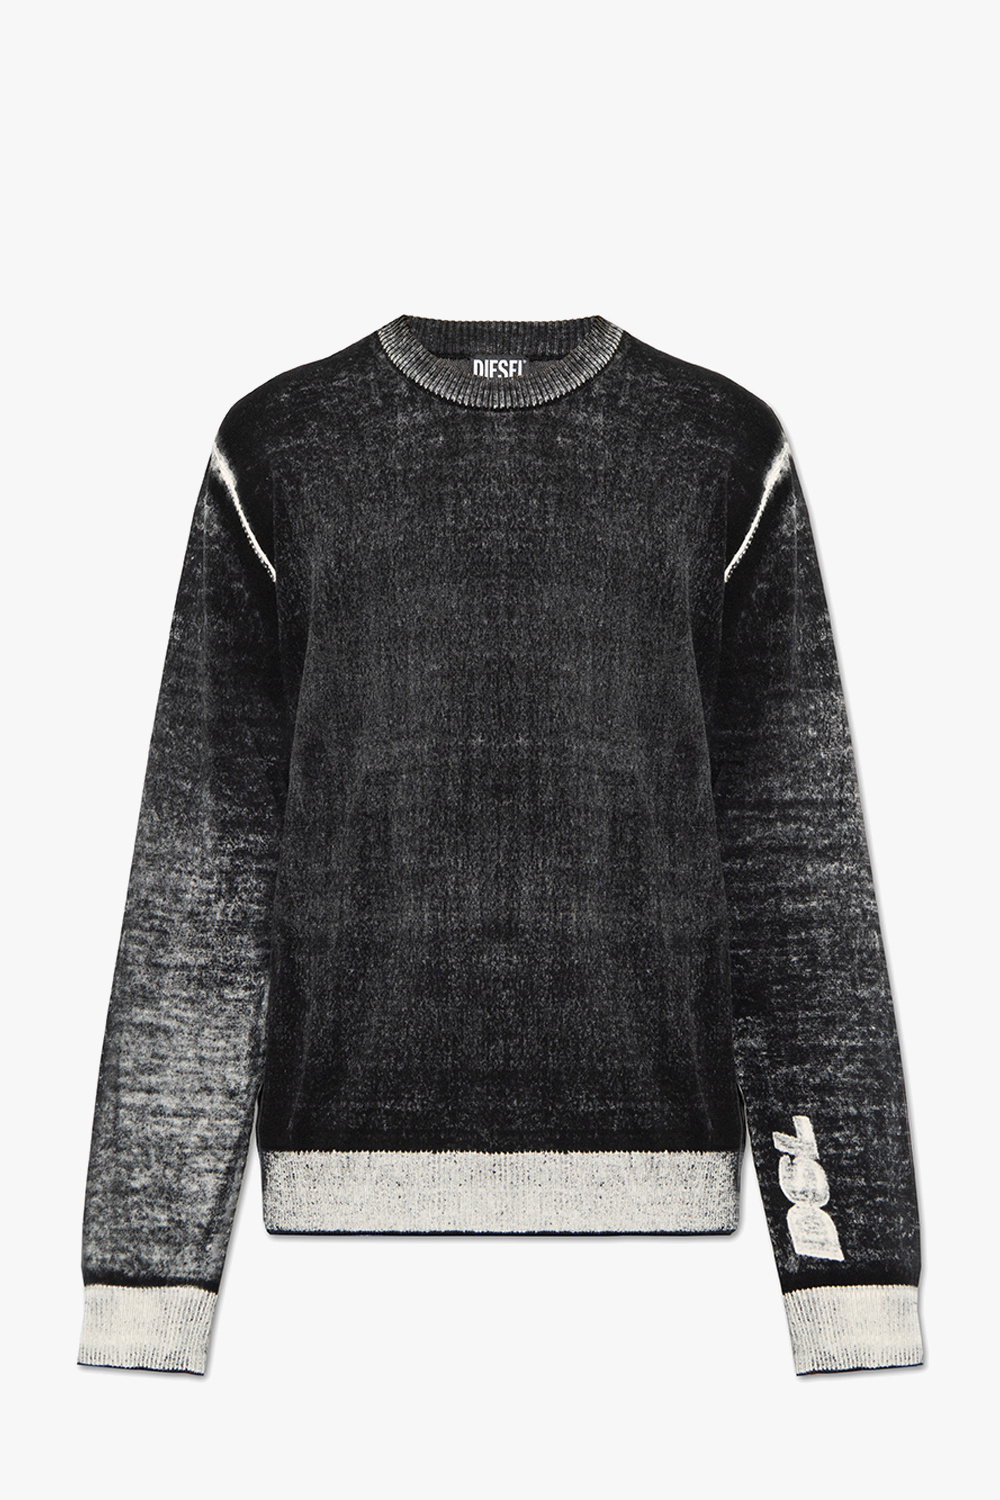 Diesel ‘K-LARENCE’ sweater | Men's Clothing | Vitkac